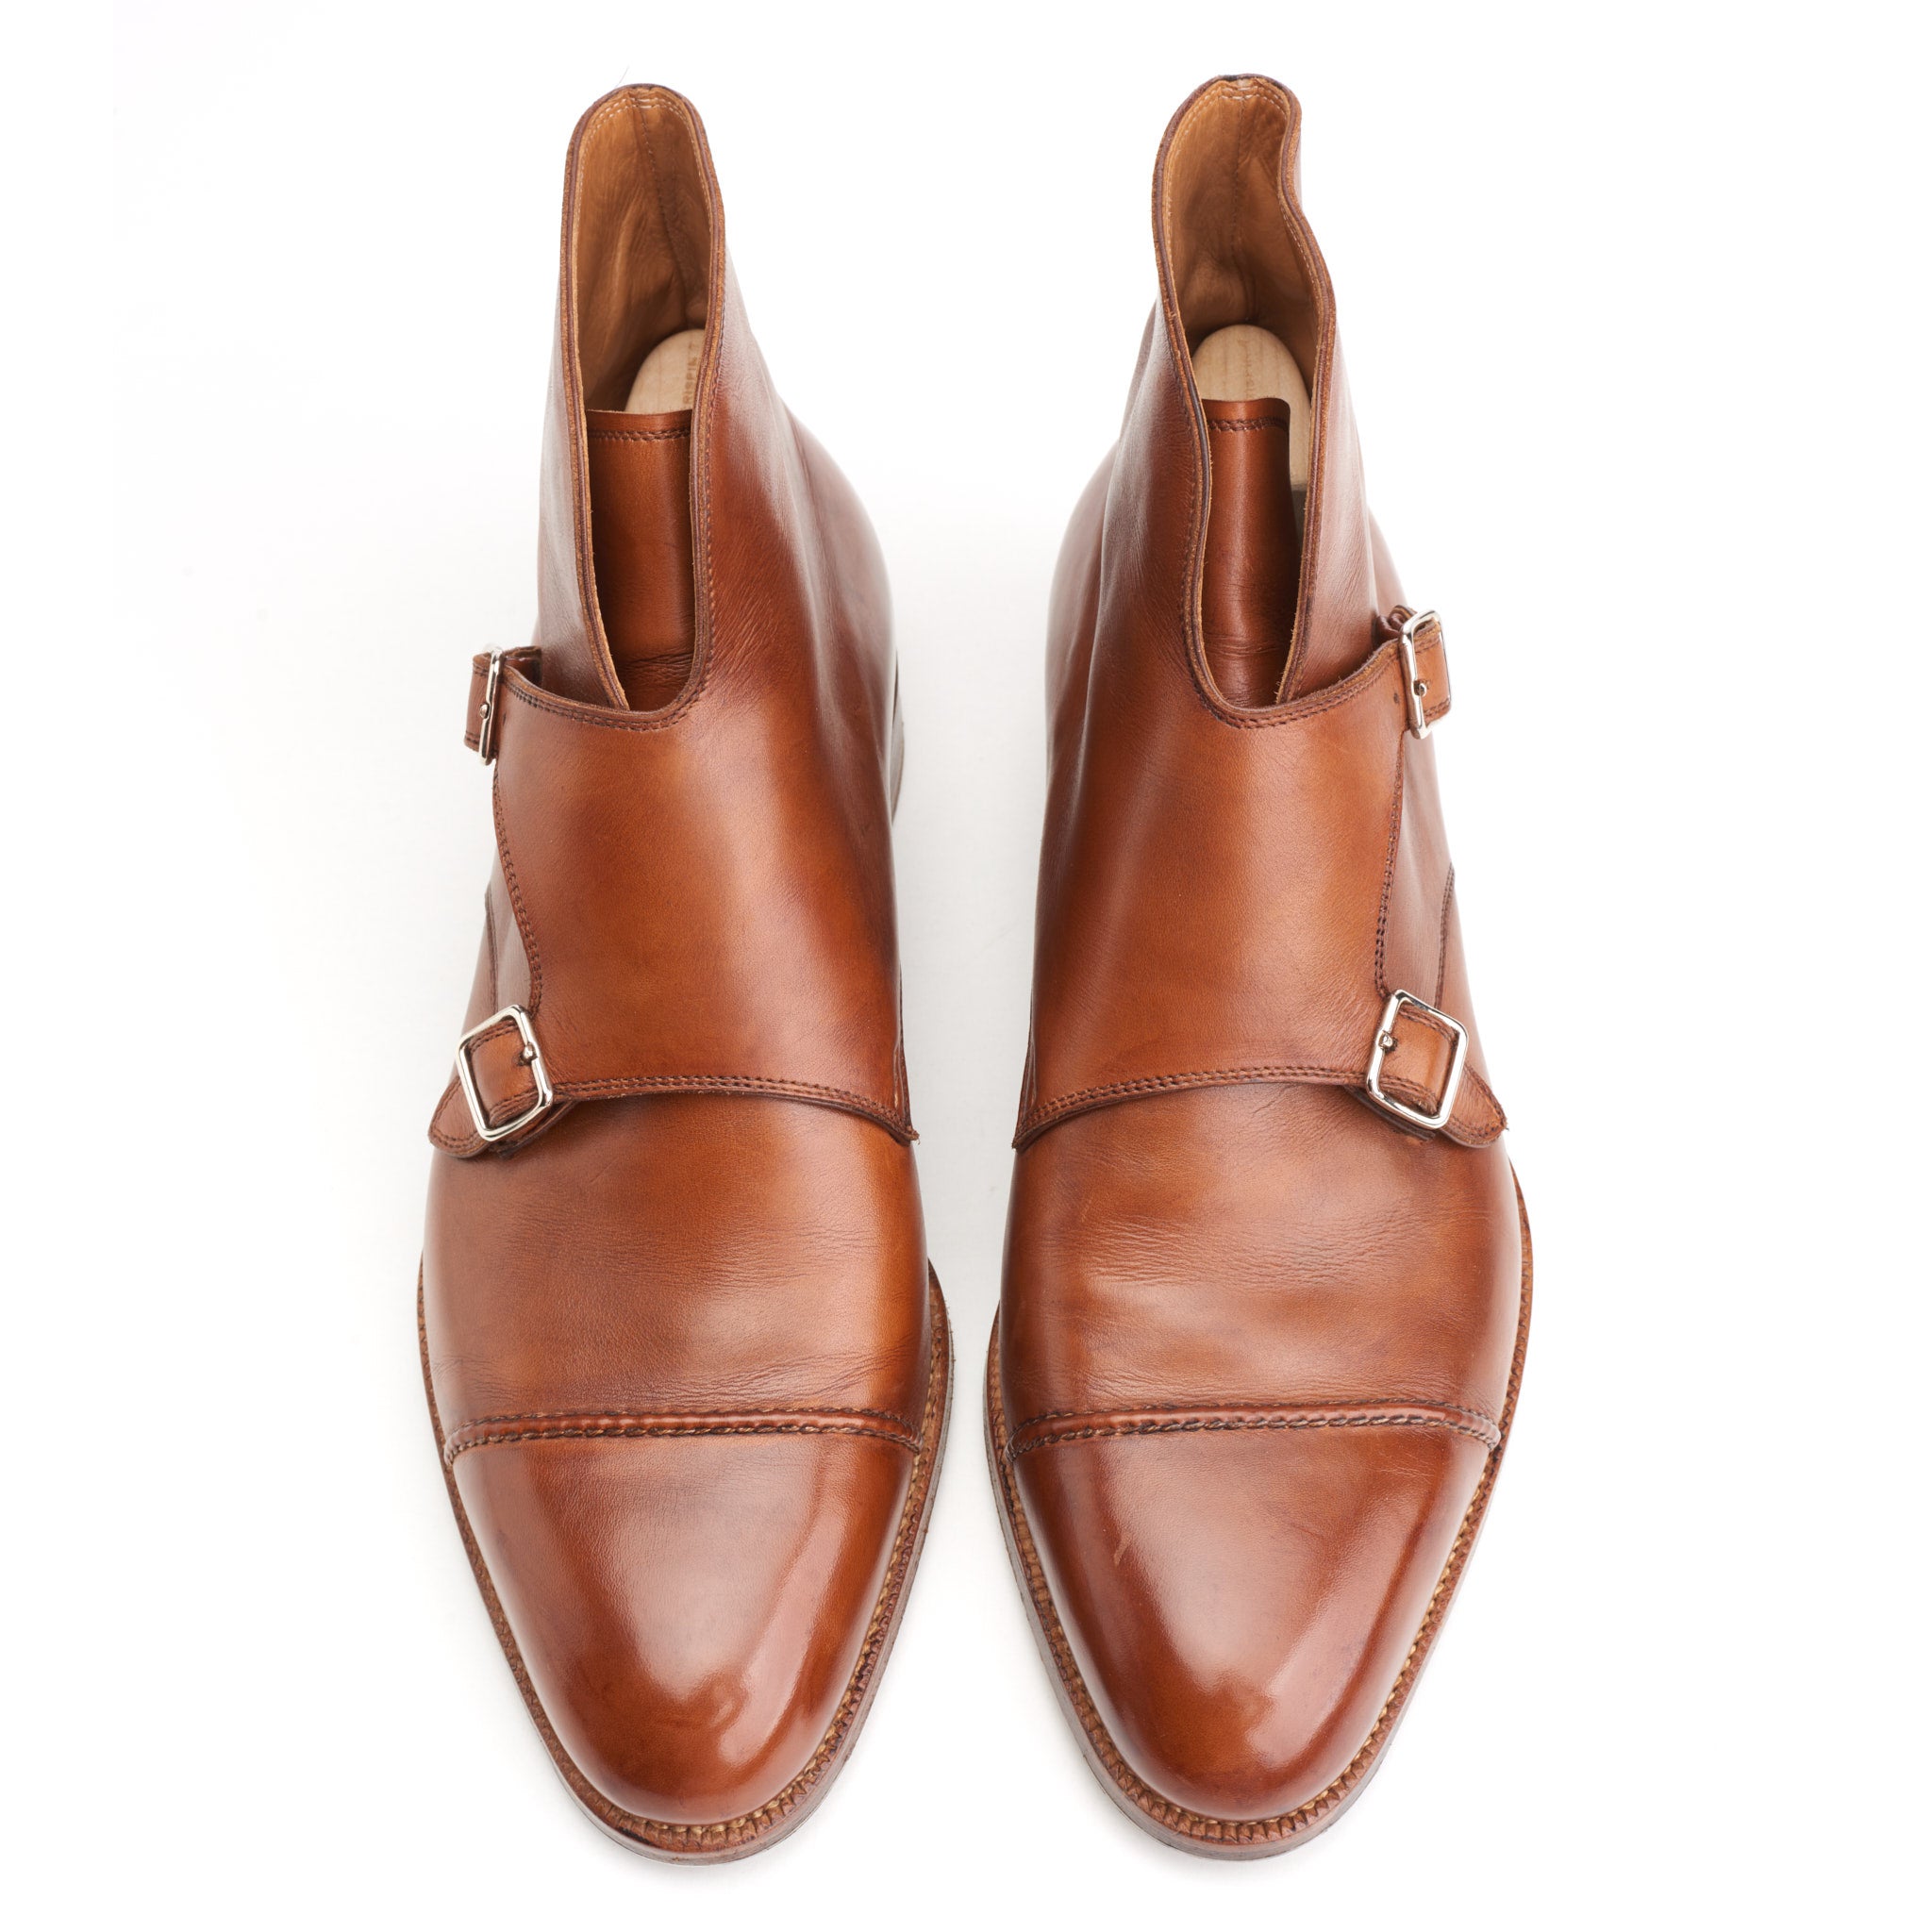 SAINT CRISPIN'S MOD 541 Cognac Leather Double Monk Boots Shoes 6.5E US 7 Trees